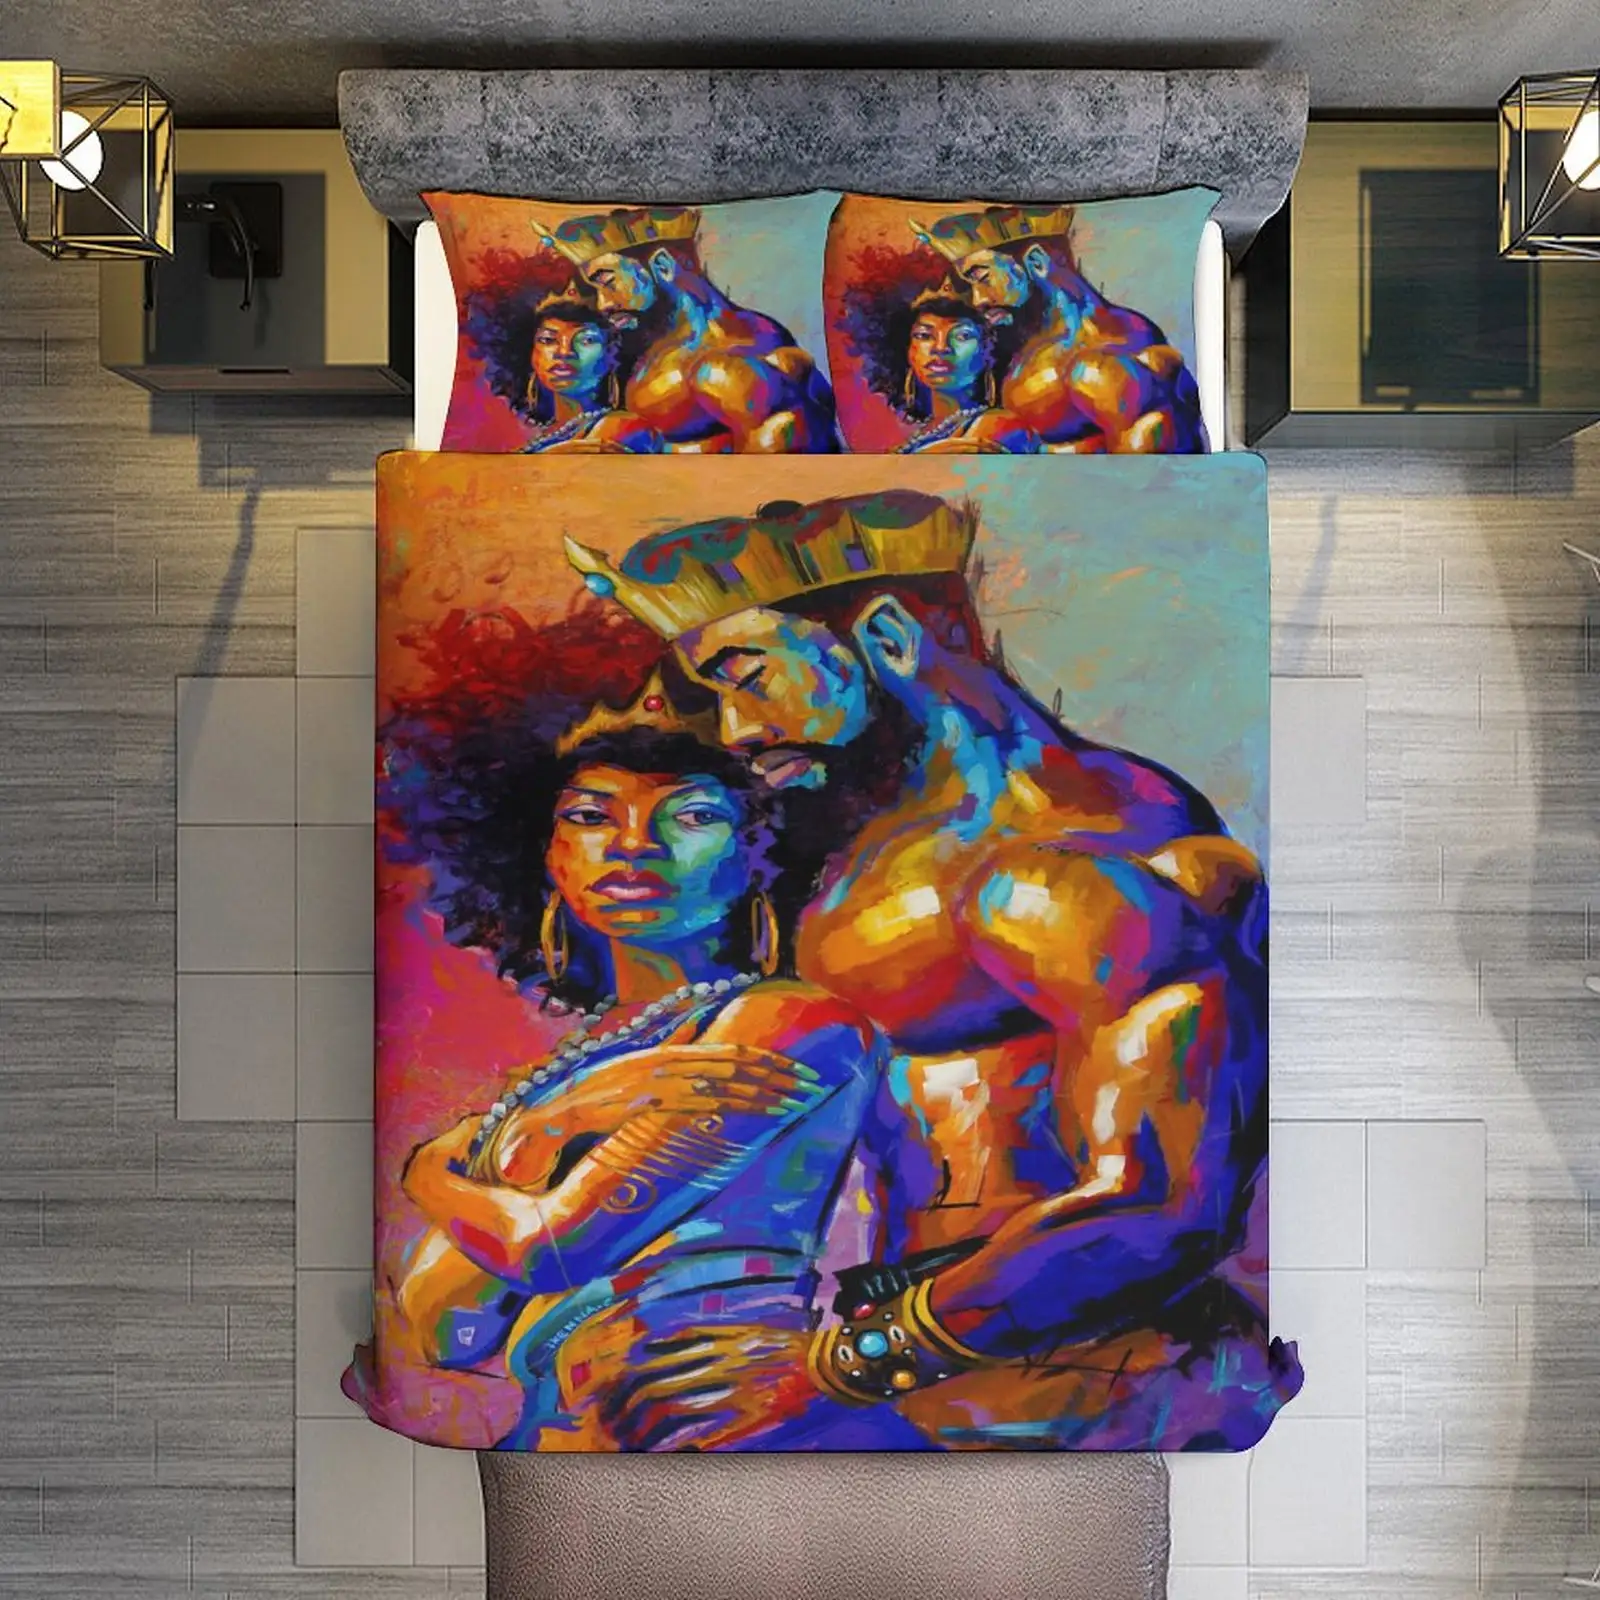 Rey afroamericano amantes pareja reina pintura arte decoración 3D impreso 3 uds juego de cama funda nórdica juego de cama colchas